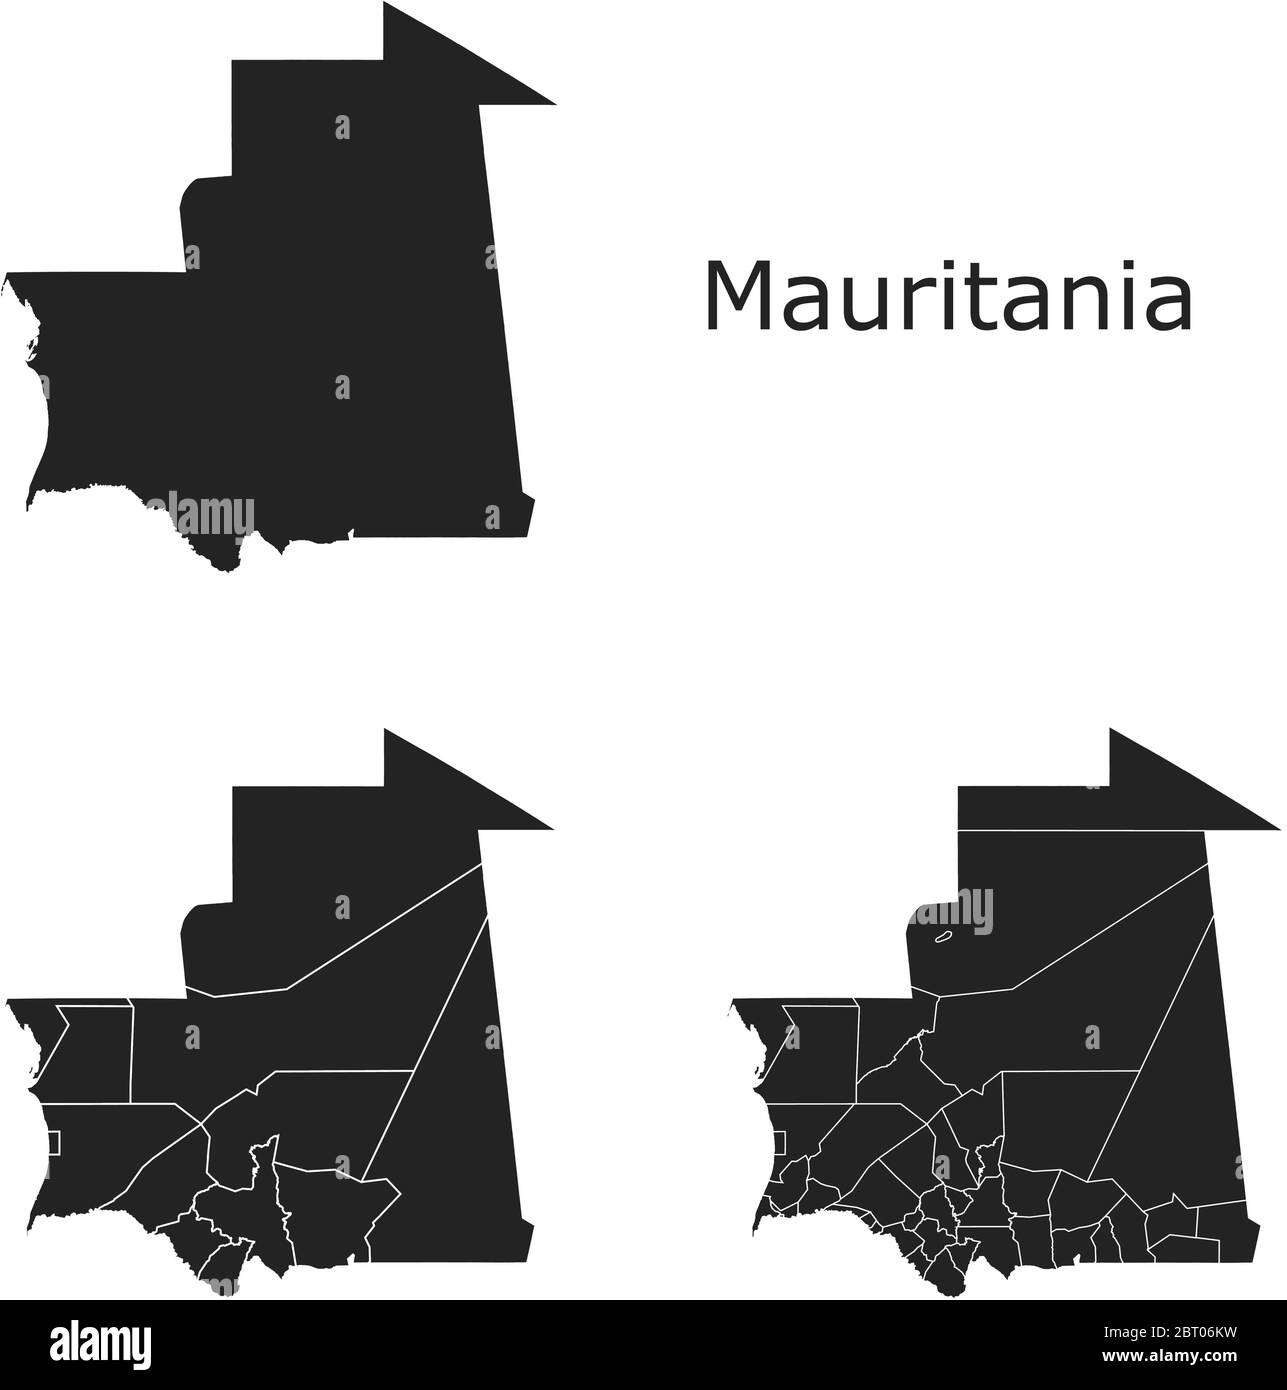 Cartes vectorielles de Mauritanie avec régions administratives, municipalités, départements, frontières Illustration de Vecteur